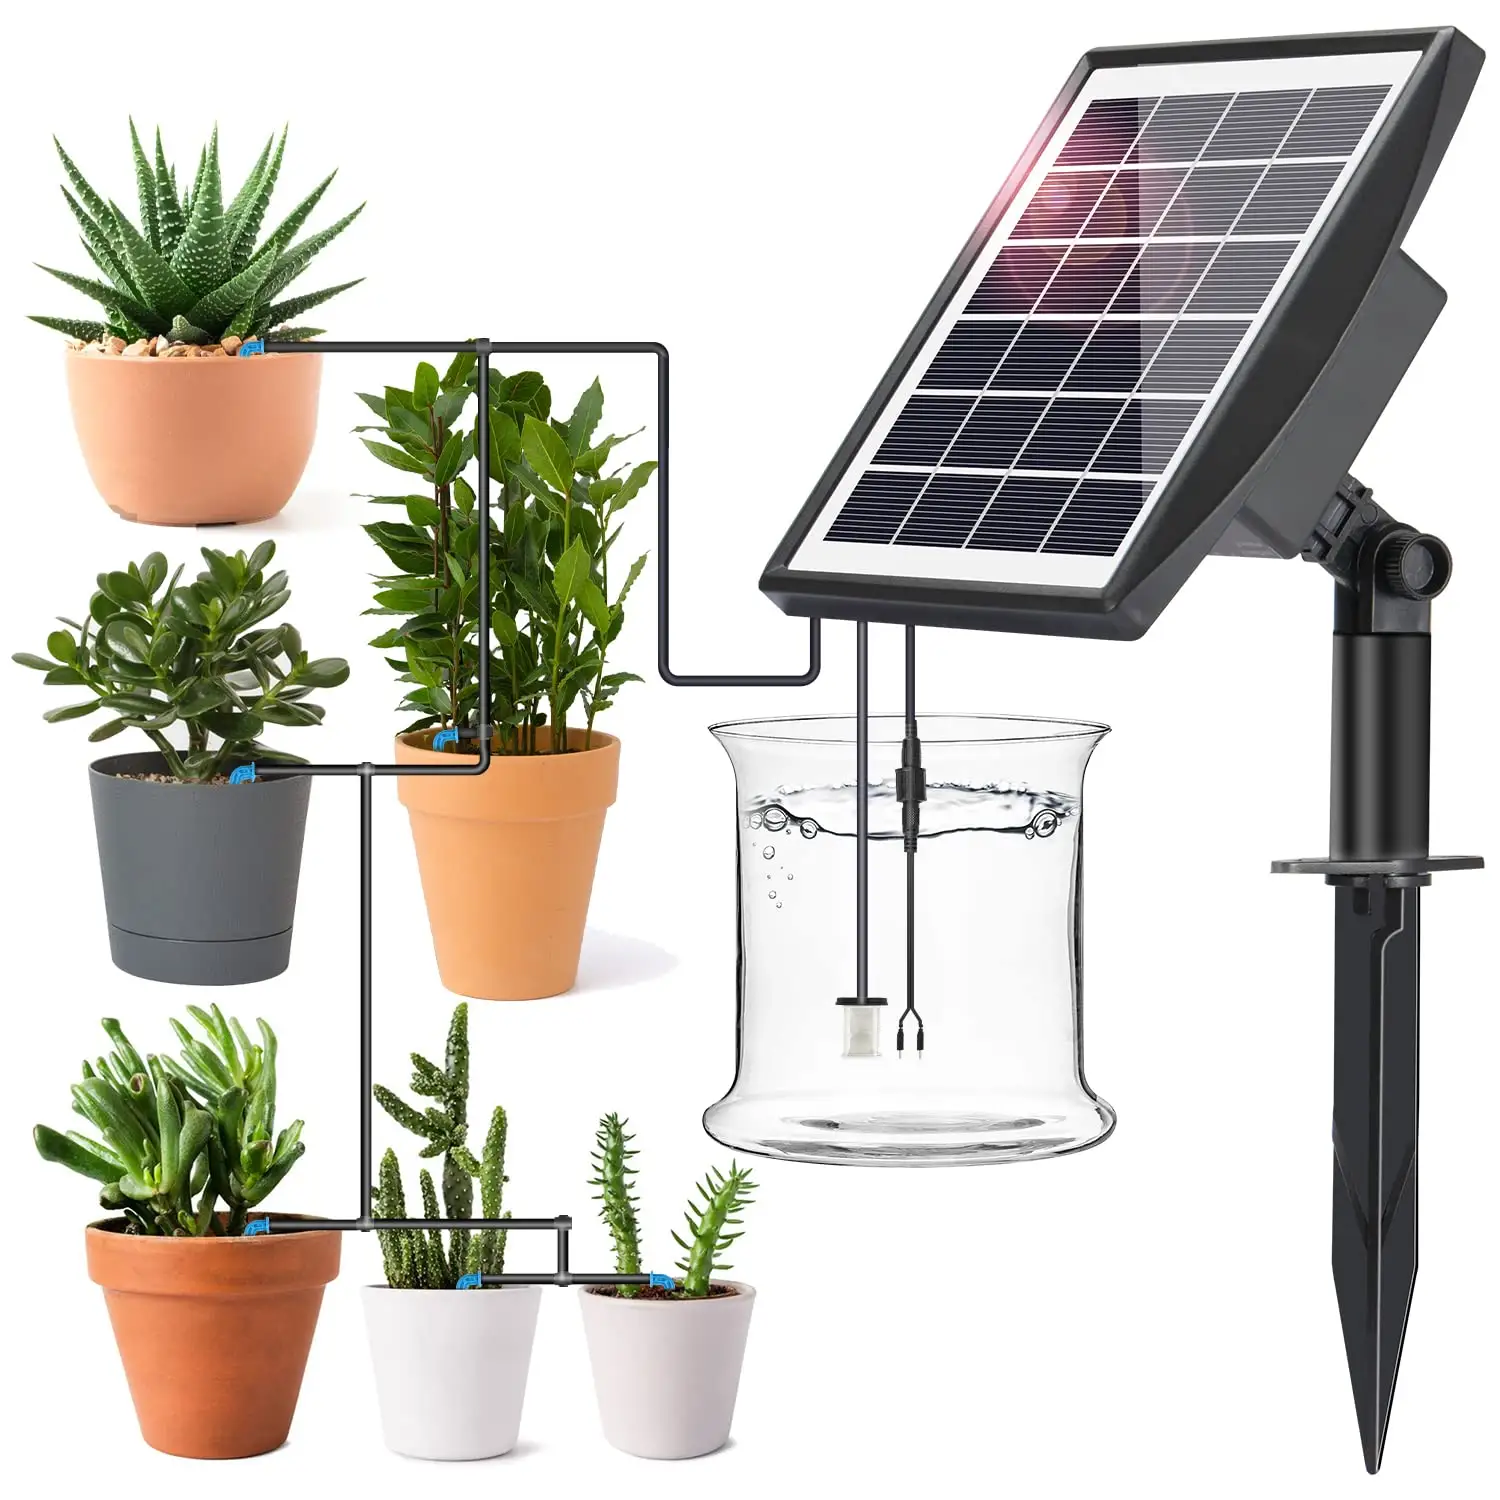 Solar Bewässerungs system Kit Bewässerungs system Kit Solar Intelligent Smart für Pflanzen auf dem Balkon, im Pflanzen bett